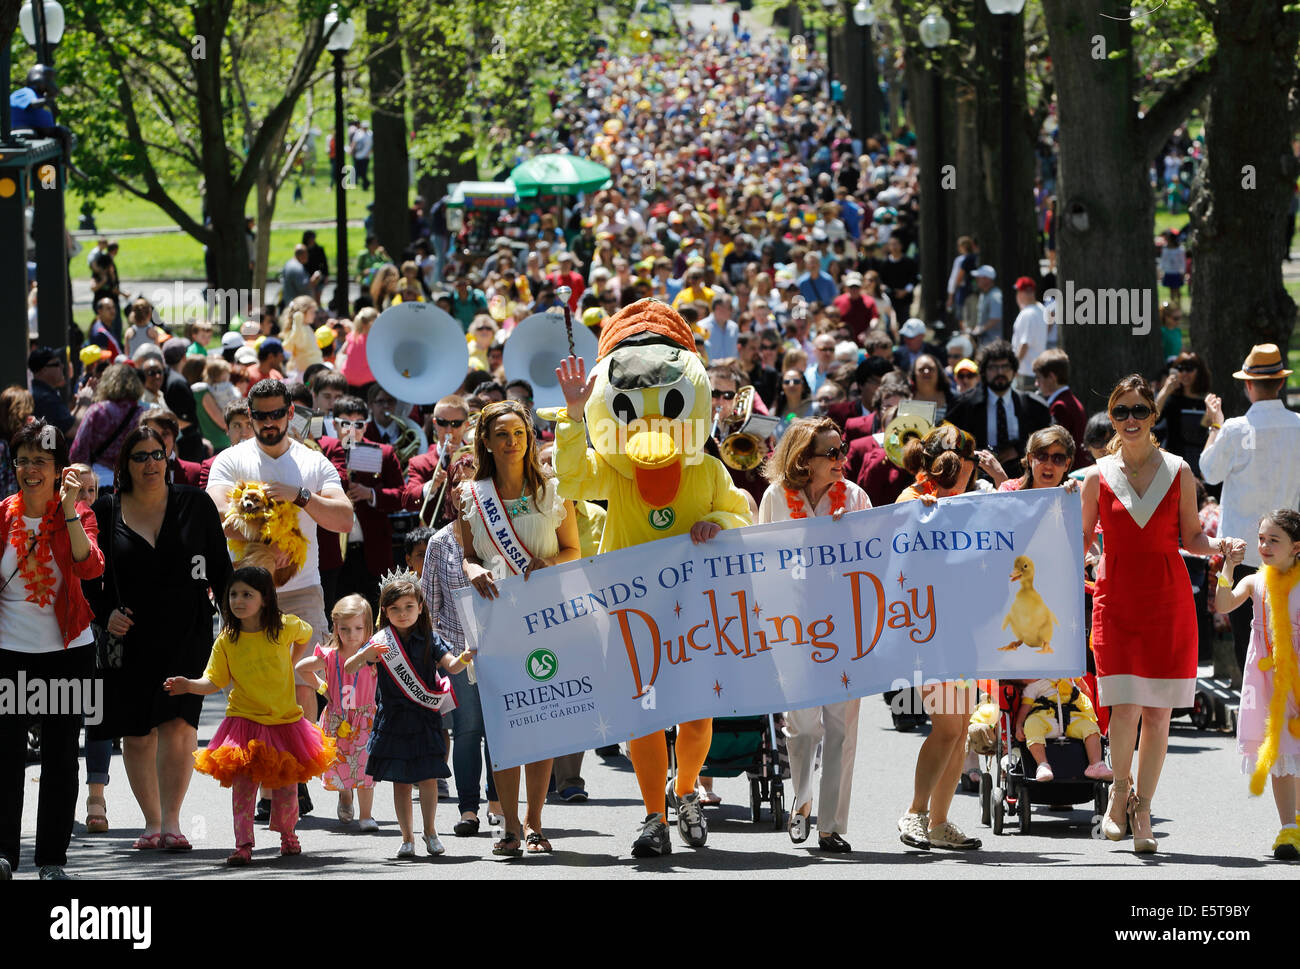 Freunde des öffentlichen Gartens gesponserten Veranstaltung unter dem Motto Parade machen Weg für Entenküken Buch, Boston, Massachusetts Stockfoto